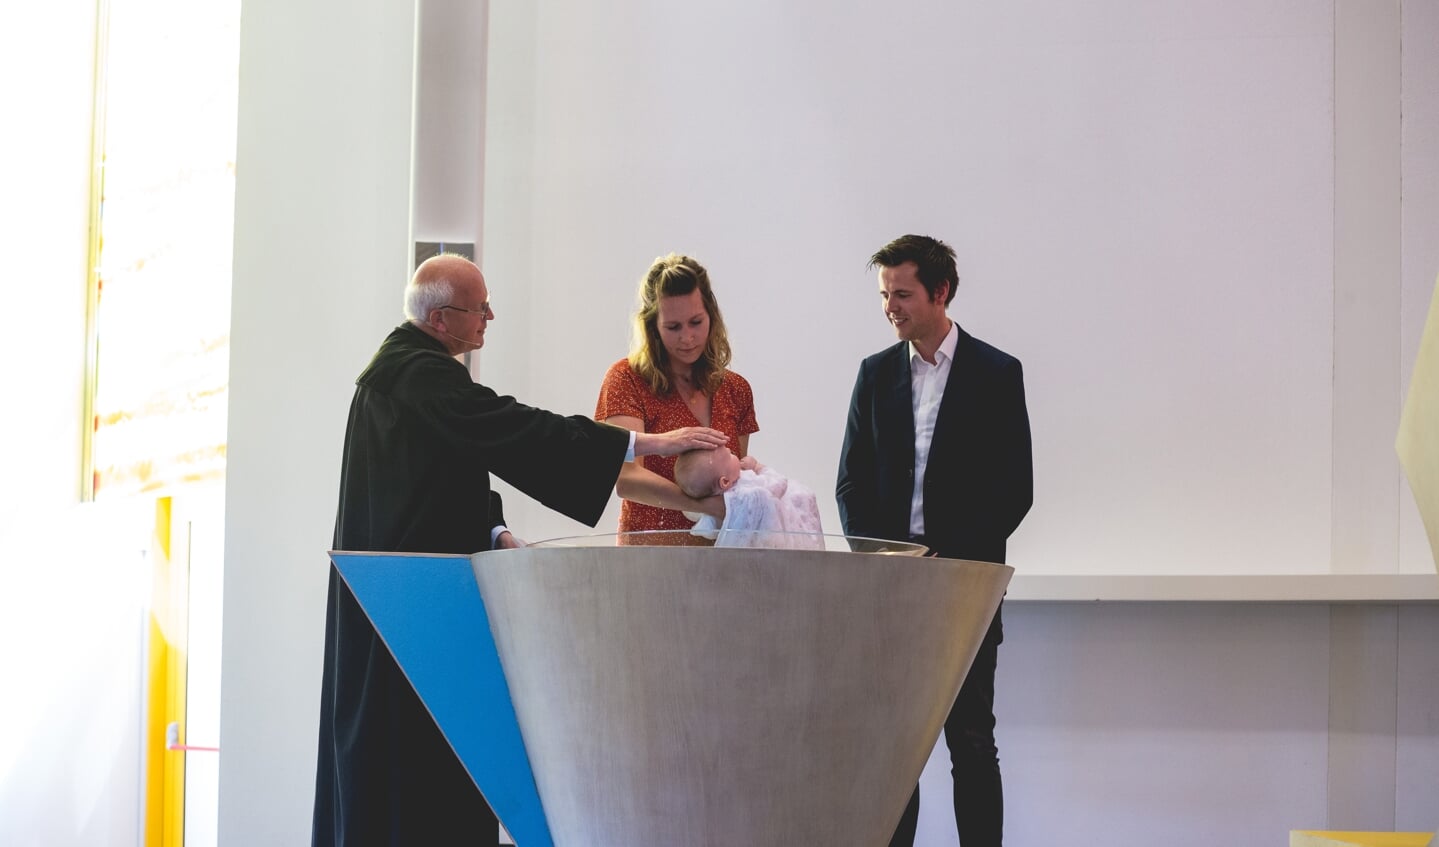 Vigo Kamphorst wordt gedoopt in kerkgebouw De Fontein in Nijkerk.